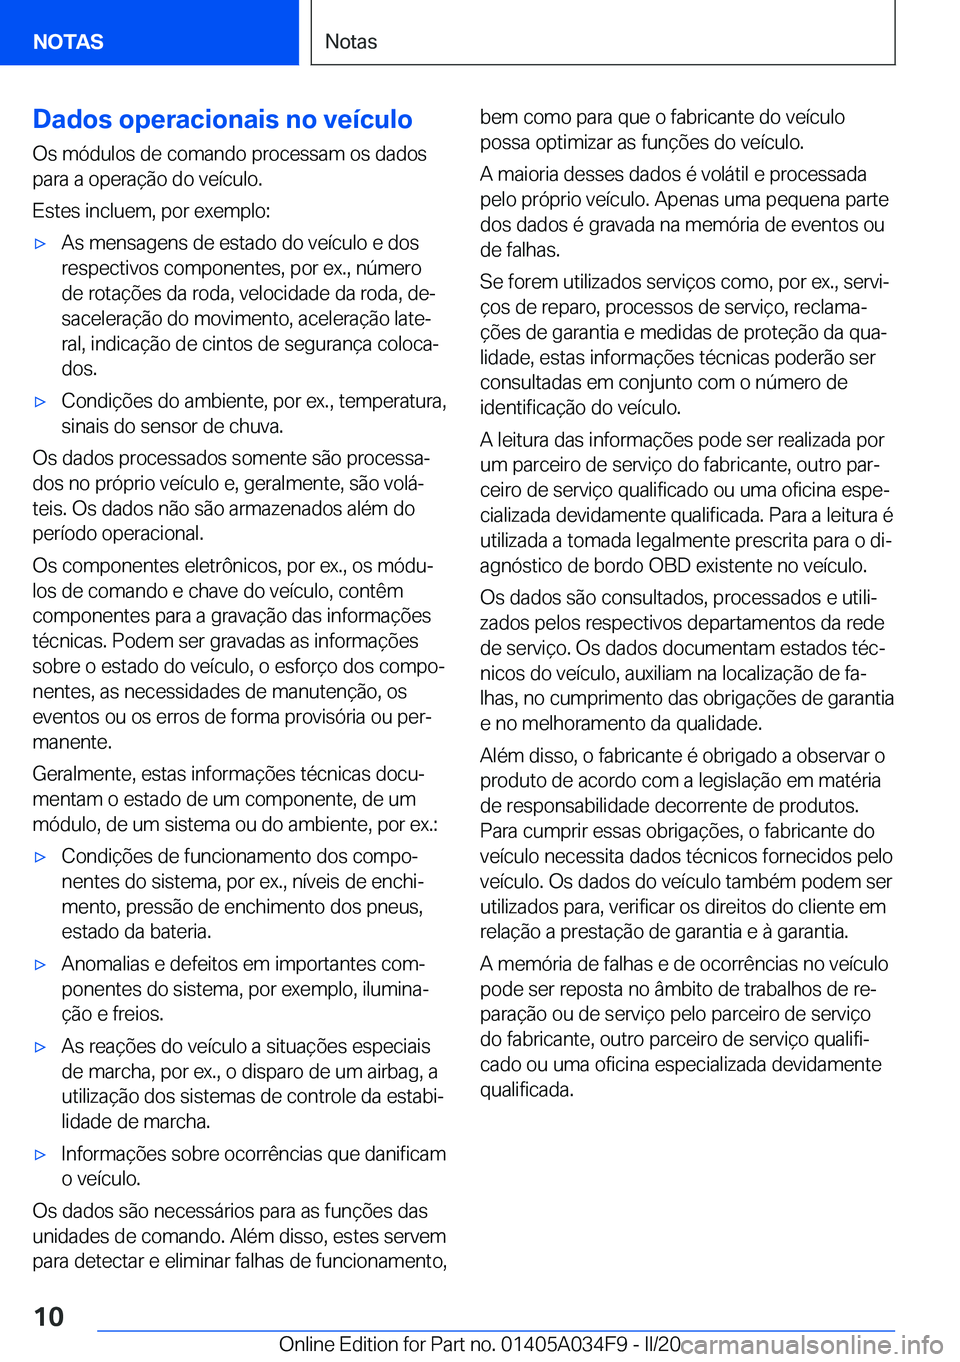 BMW X3 2020  Manual do condutor (in Portuguese) �D�a�d�o�s��o�p�e�r�a�c�i�o�n�a�i�s��n�o��v�e�